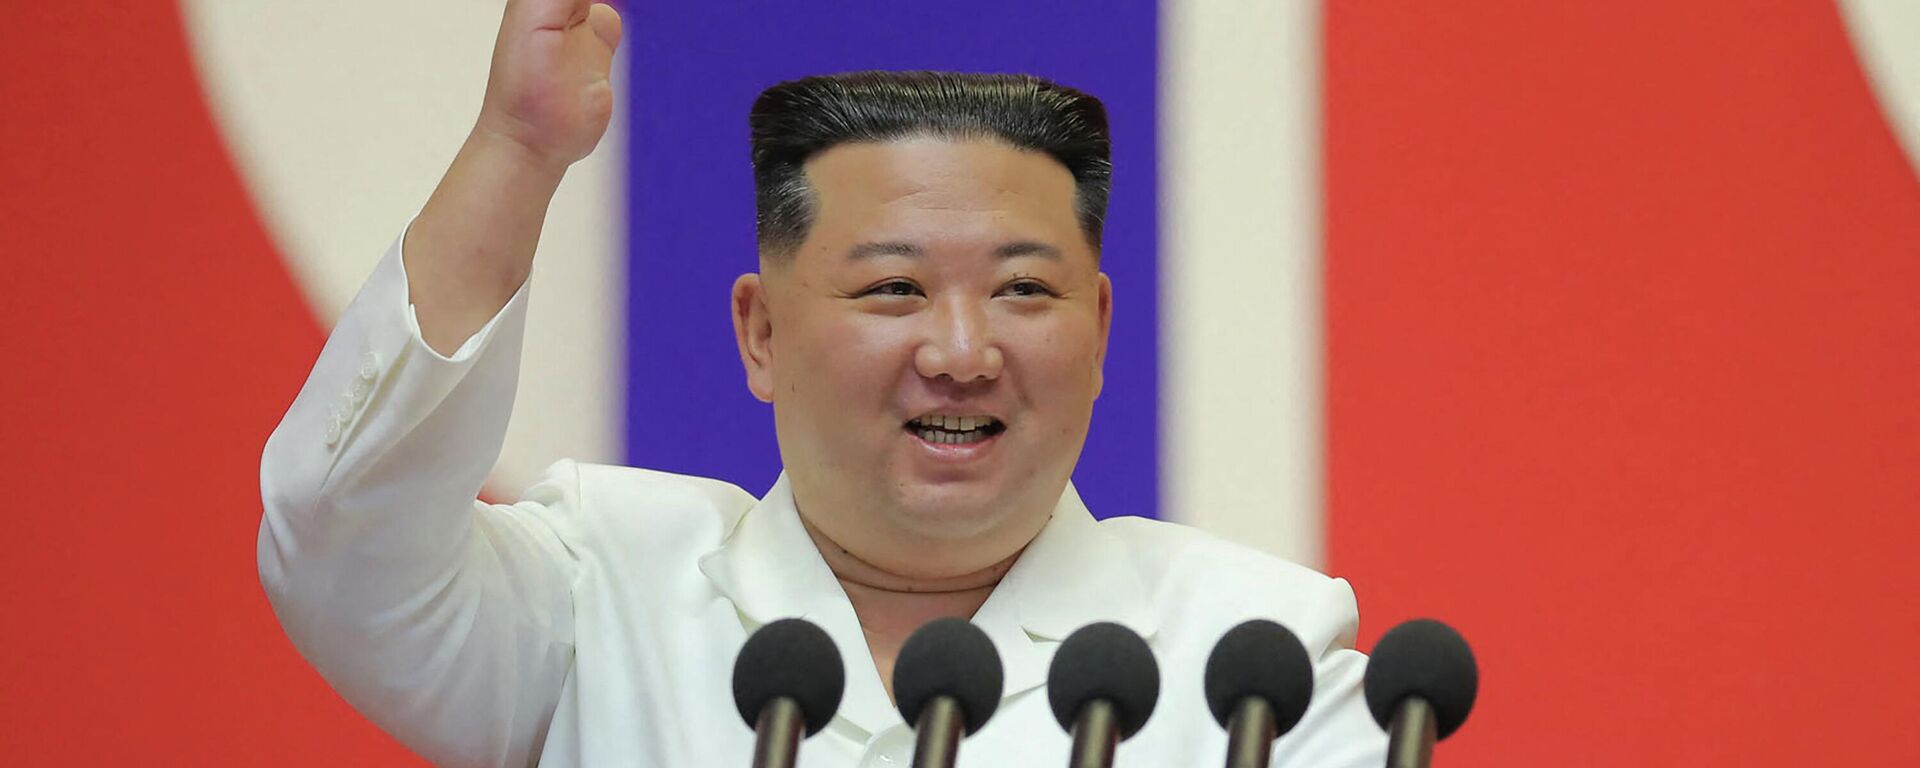 زعيم كوريا الشمالية، كيم جونغ أون، يلقي خطابا لتهنئة أعضاء القسم الطبي العسكري بالجيش الشعبي الكوري على المساهمة في منع انتشار (كوفيد-19) في بيونغ يانغ، 18 أغسطس/ آب 2022 - سبوتنيك عربي, 1920, 21.07.2023